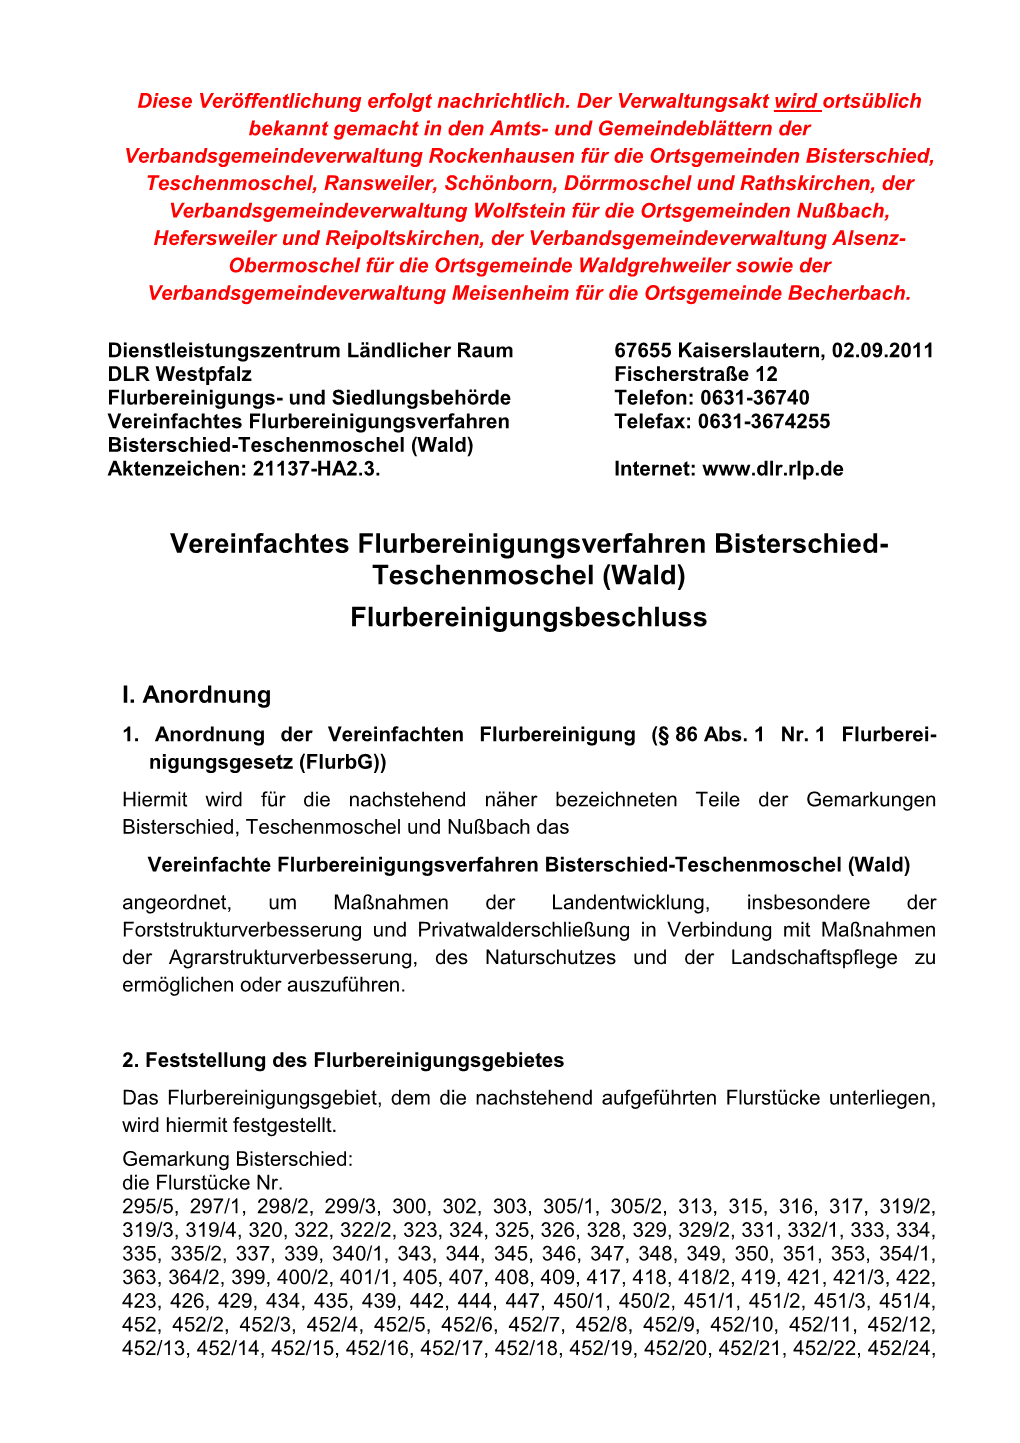 Vereinfachtes Flurbereinigungsverfahren Telefax: 0631-3674255 Bisterschied-Teschenmoschel (Wald) Aktenzeichen: 21137-HA2.3